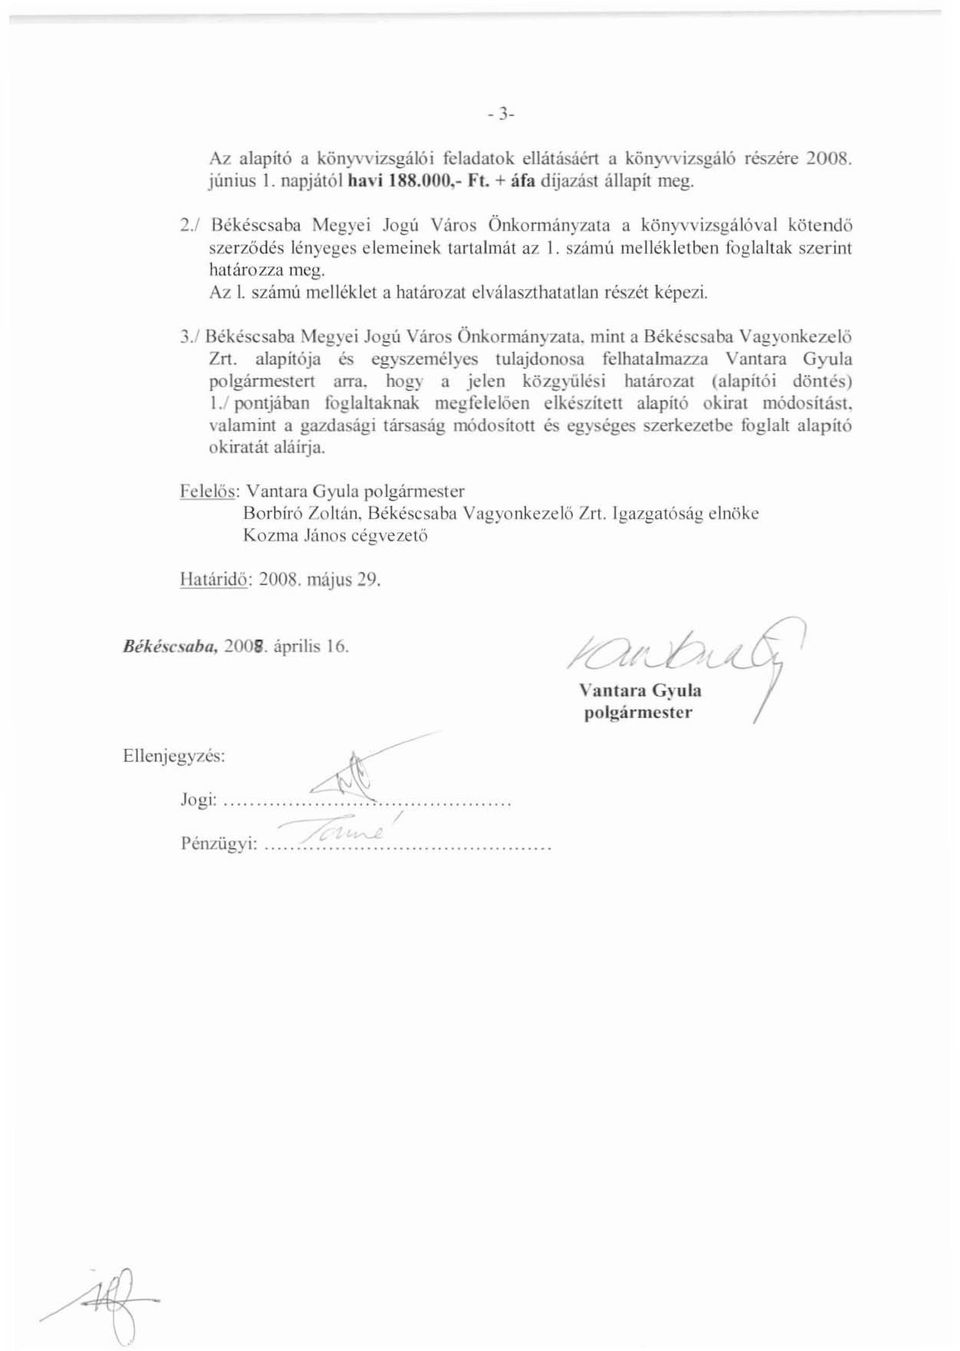 mini a Békéscsaba Vagyonkezelő Zn. alapítója és egyszemélyes tulajdonosa felhatalmazza Vantara Gyula polgármestert arra. hogy a jelen közgyülési határozat (alapítói döntés) 1.